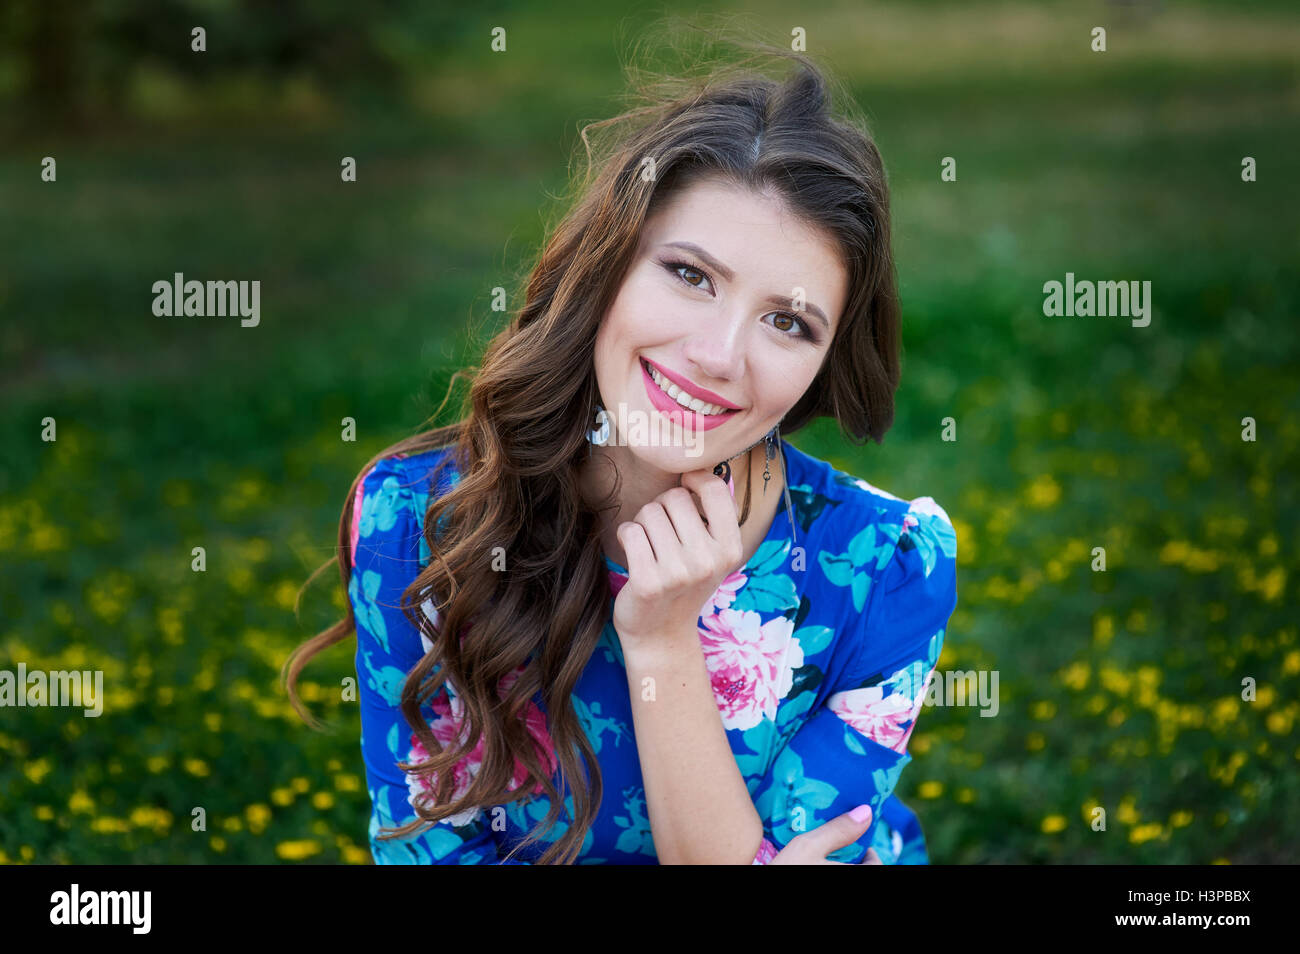 Retrato de joven mujer descanse en el parque sonriendo en el césped Foto de stock